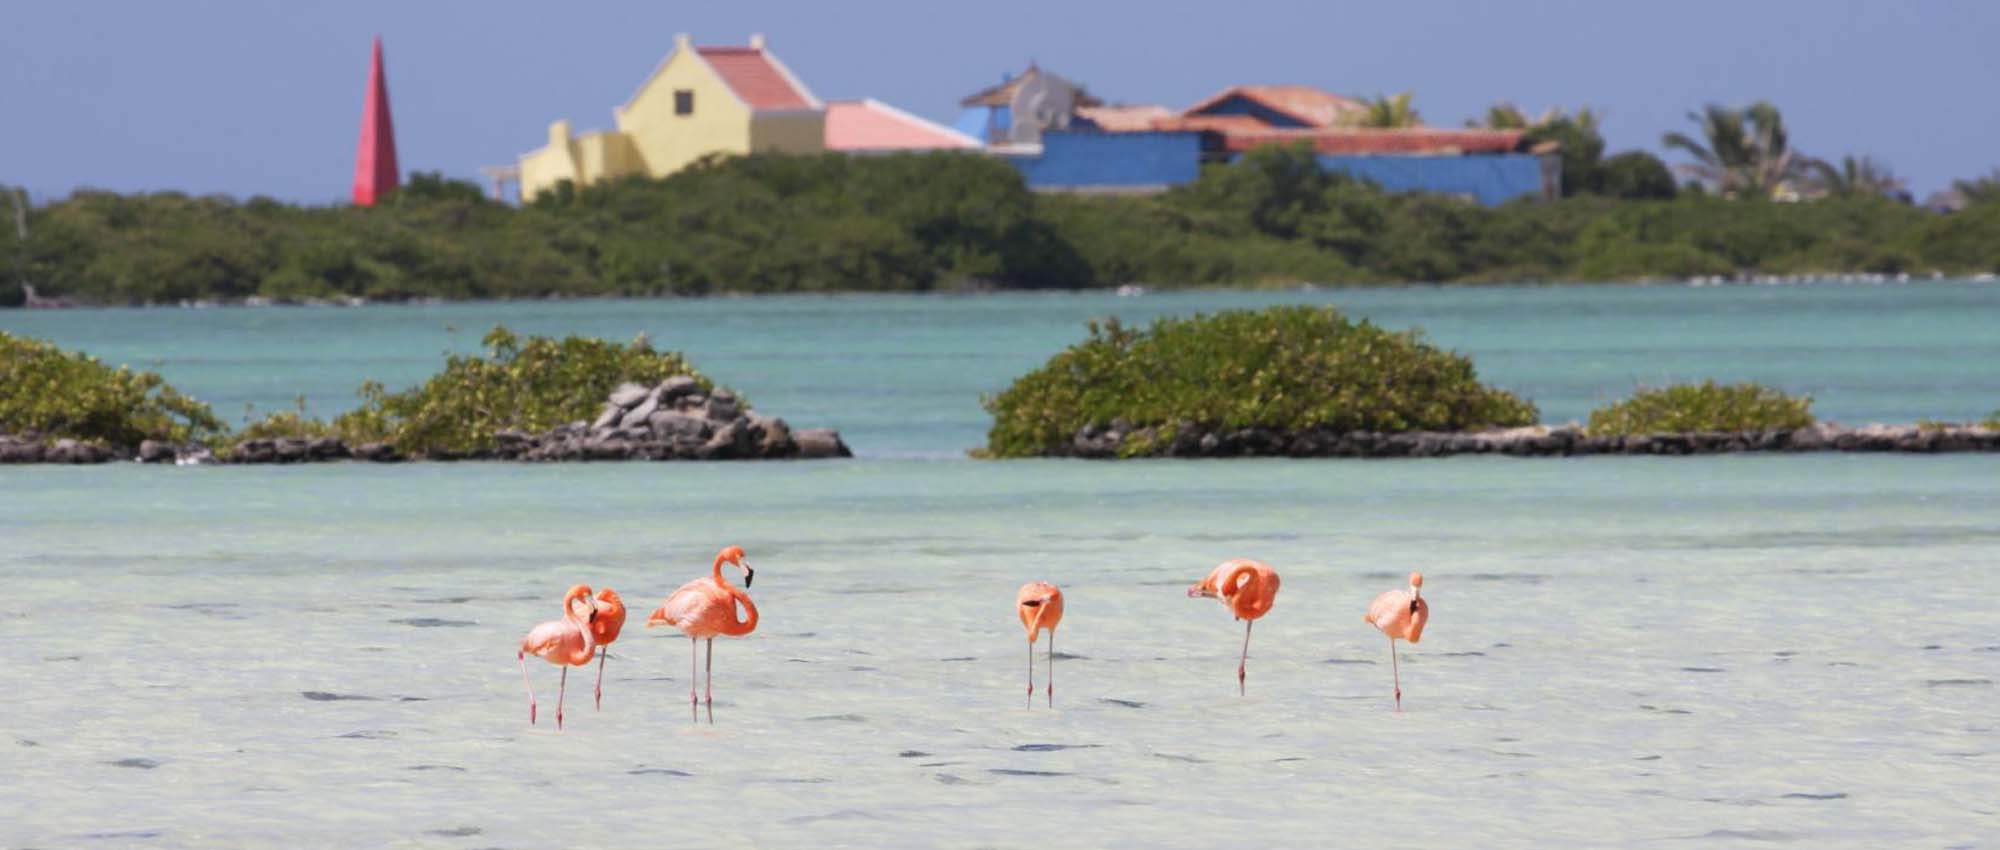 Meerdere flamingo's in het water met gele en blauwe gebouwen op de achtergrond